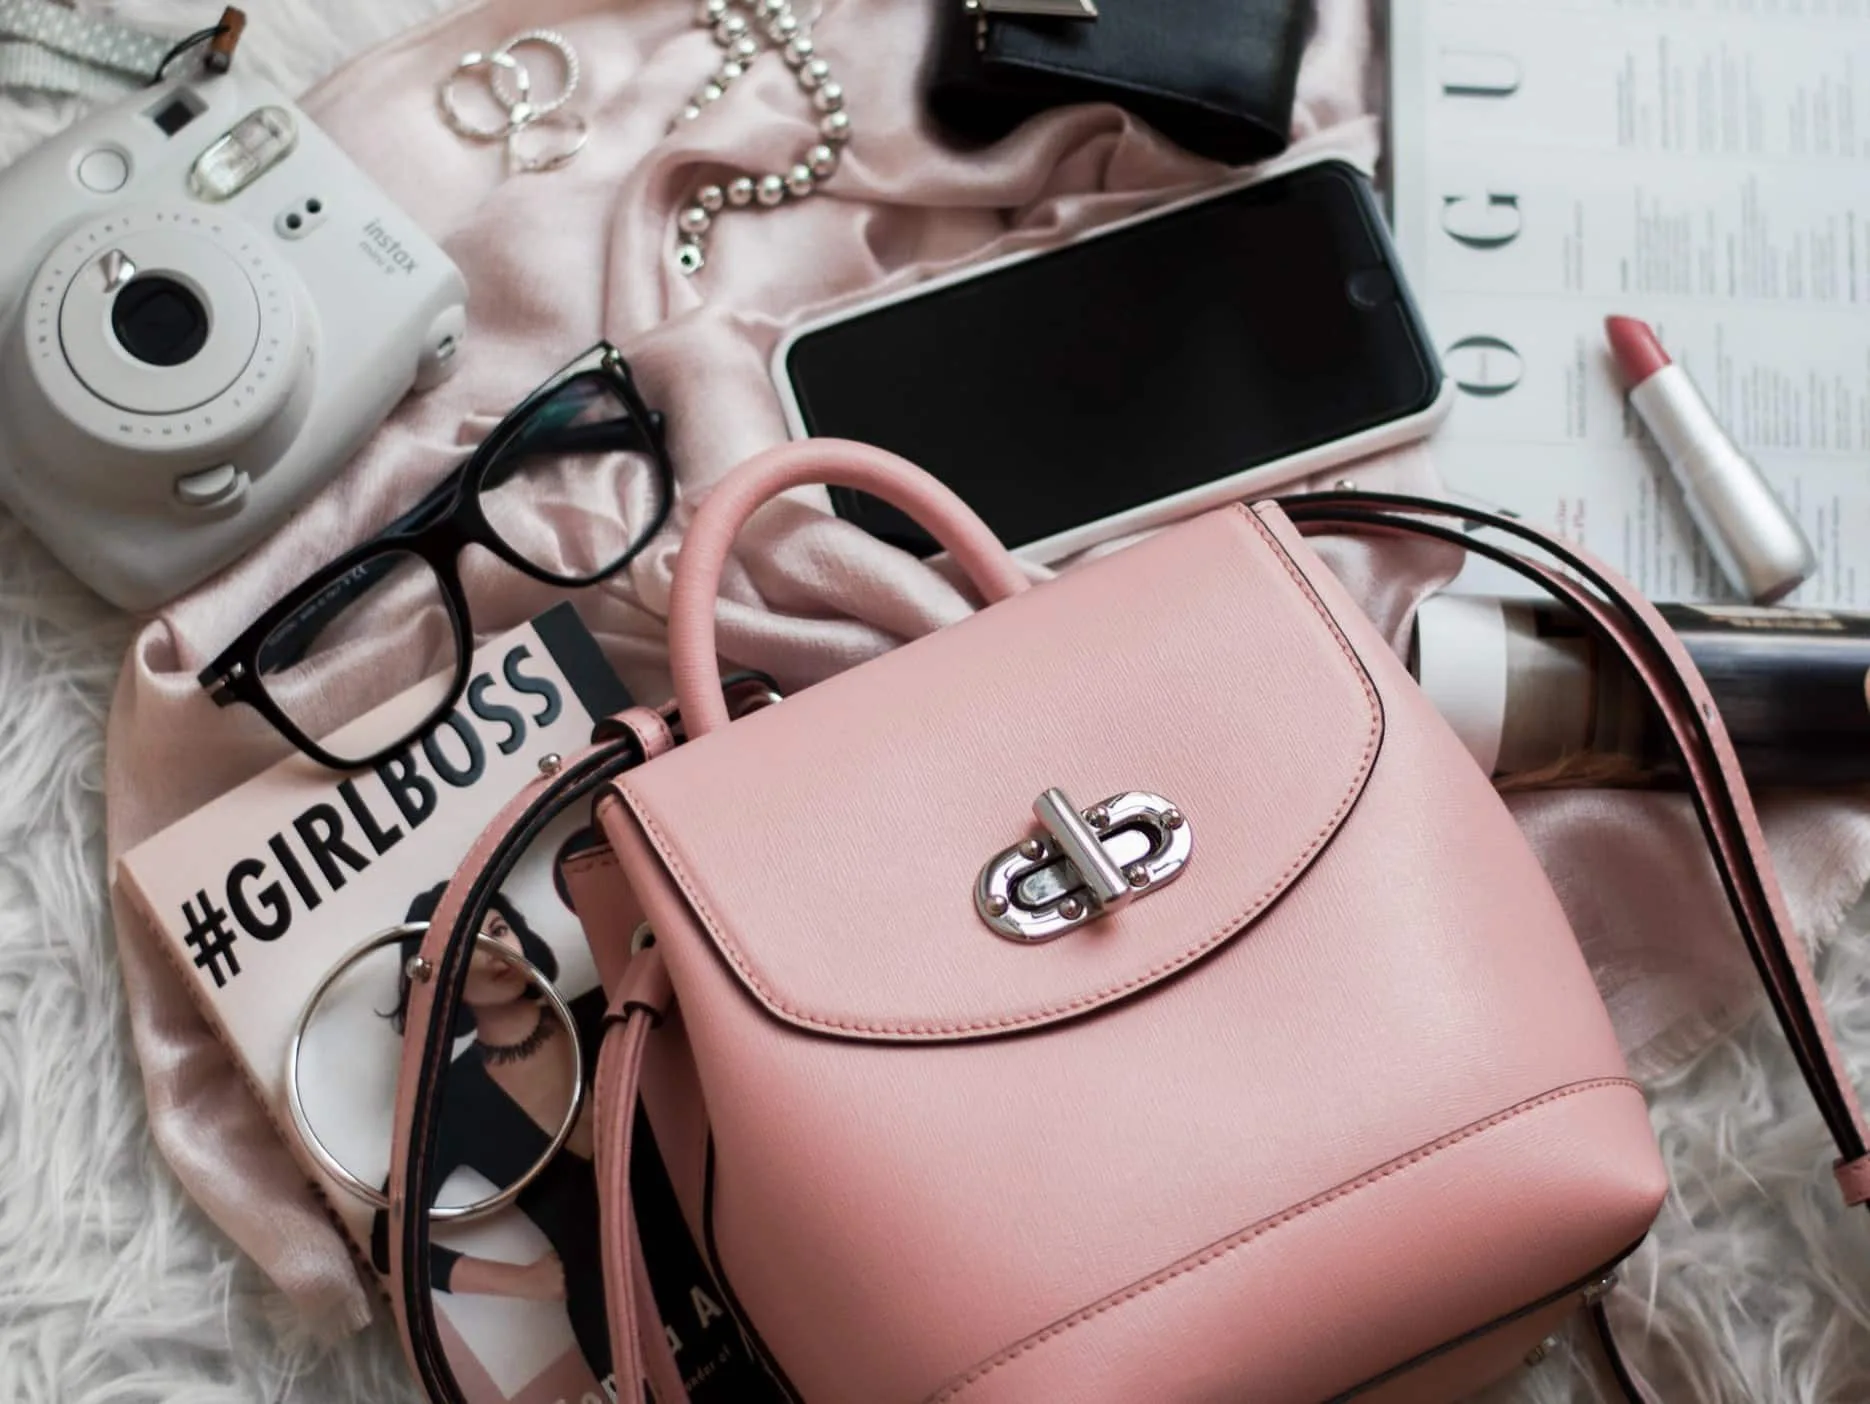 Różowy plecak, okulary, telefon, aparat Instax, biżuteria, pomadka i magazyn, rozłożone na miękkiej powierzchni.